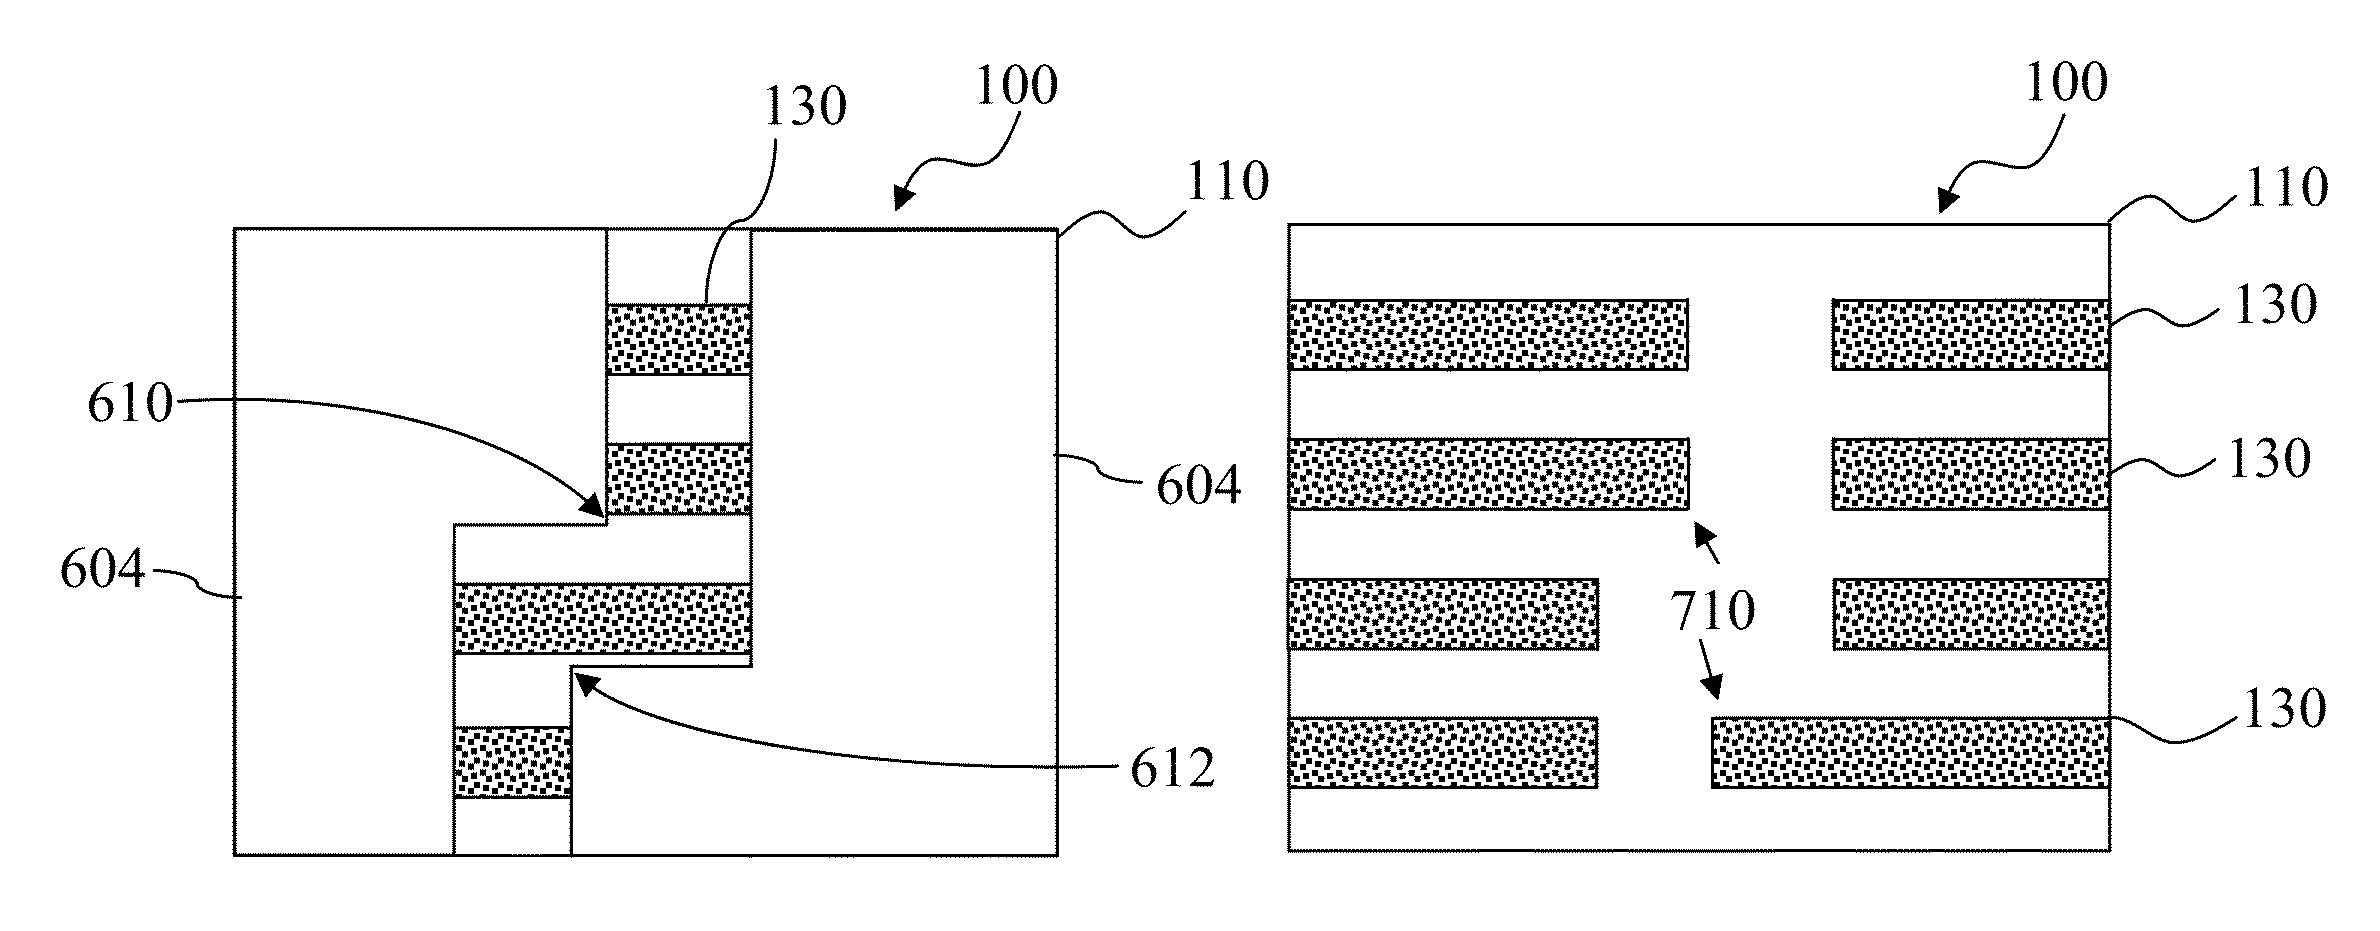 Cut-mask patterning process for fin-like field effect transistor (FinFET) device